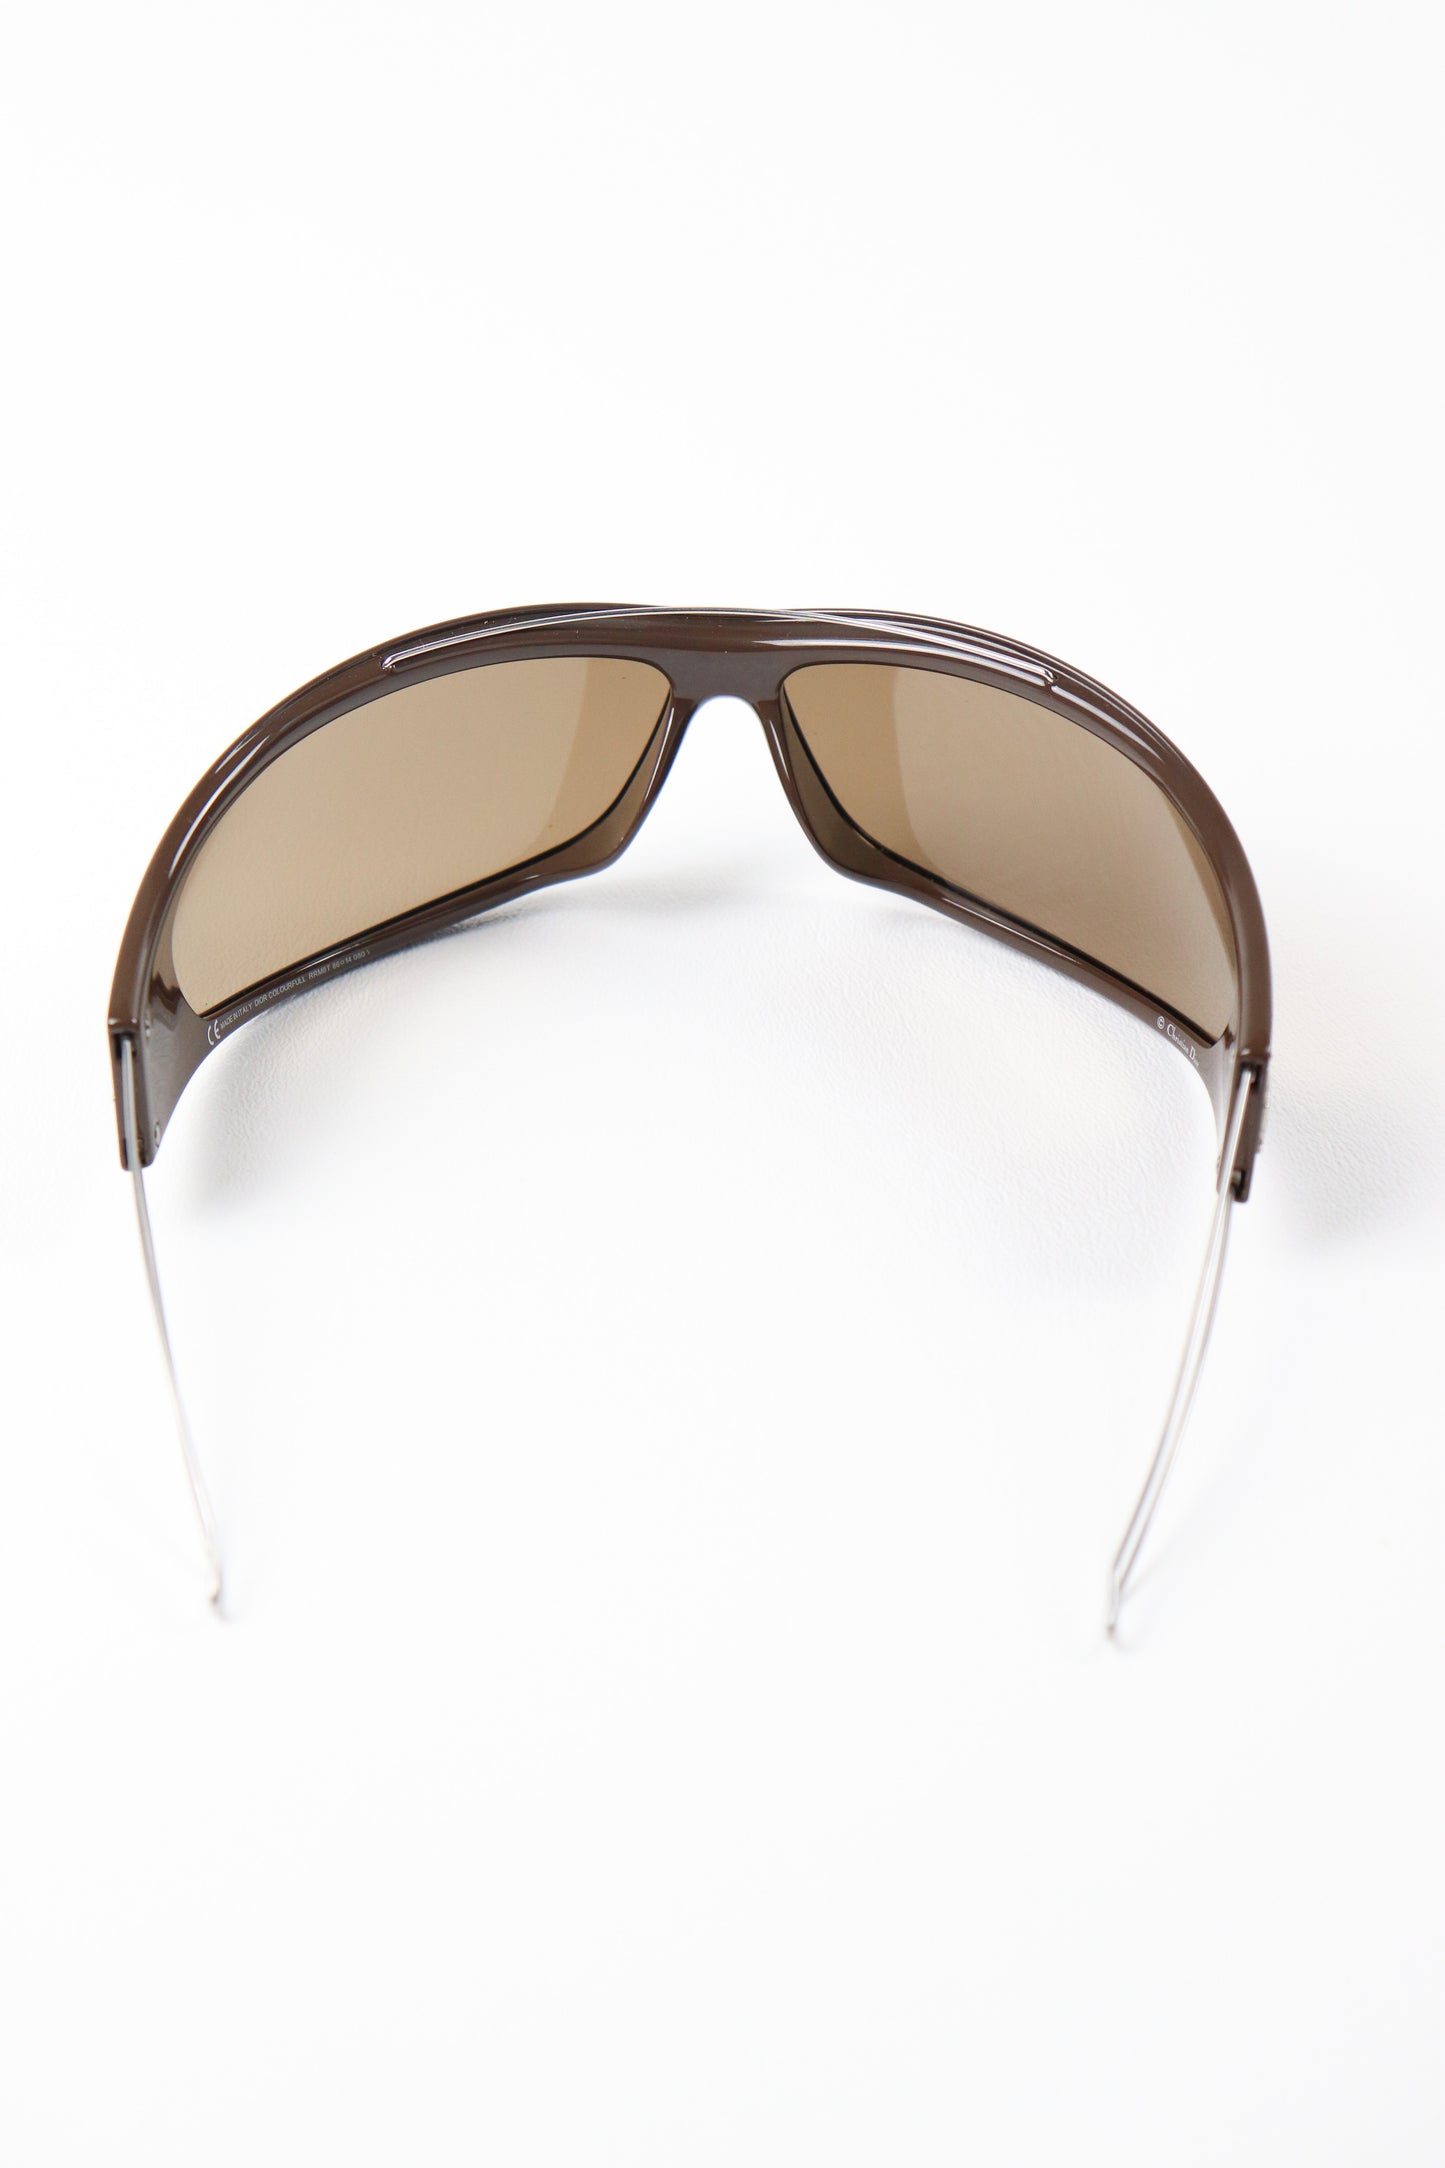 RARE Dior Sport Ski Sunglasses